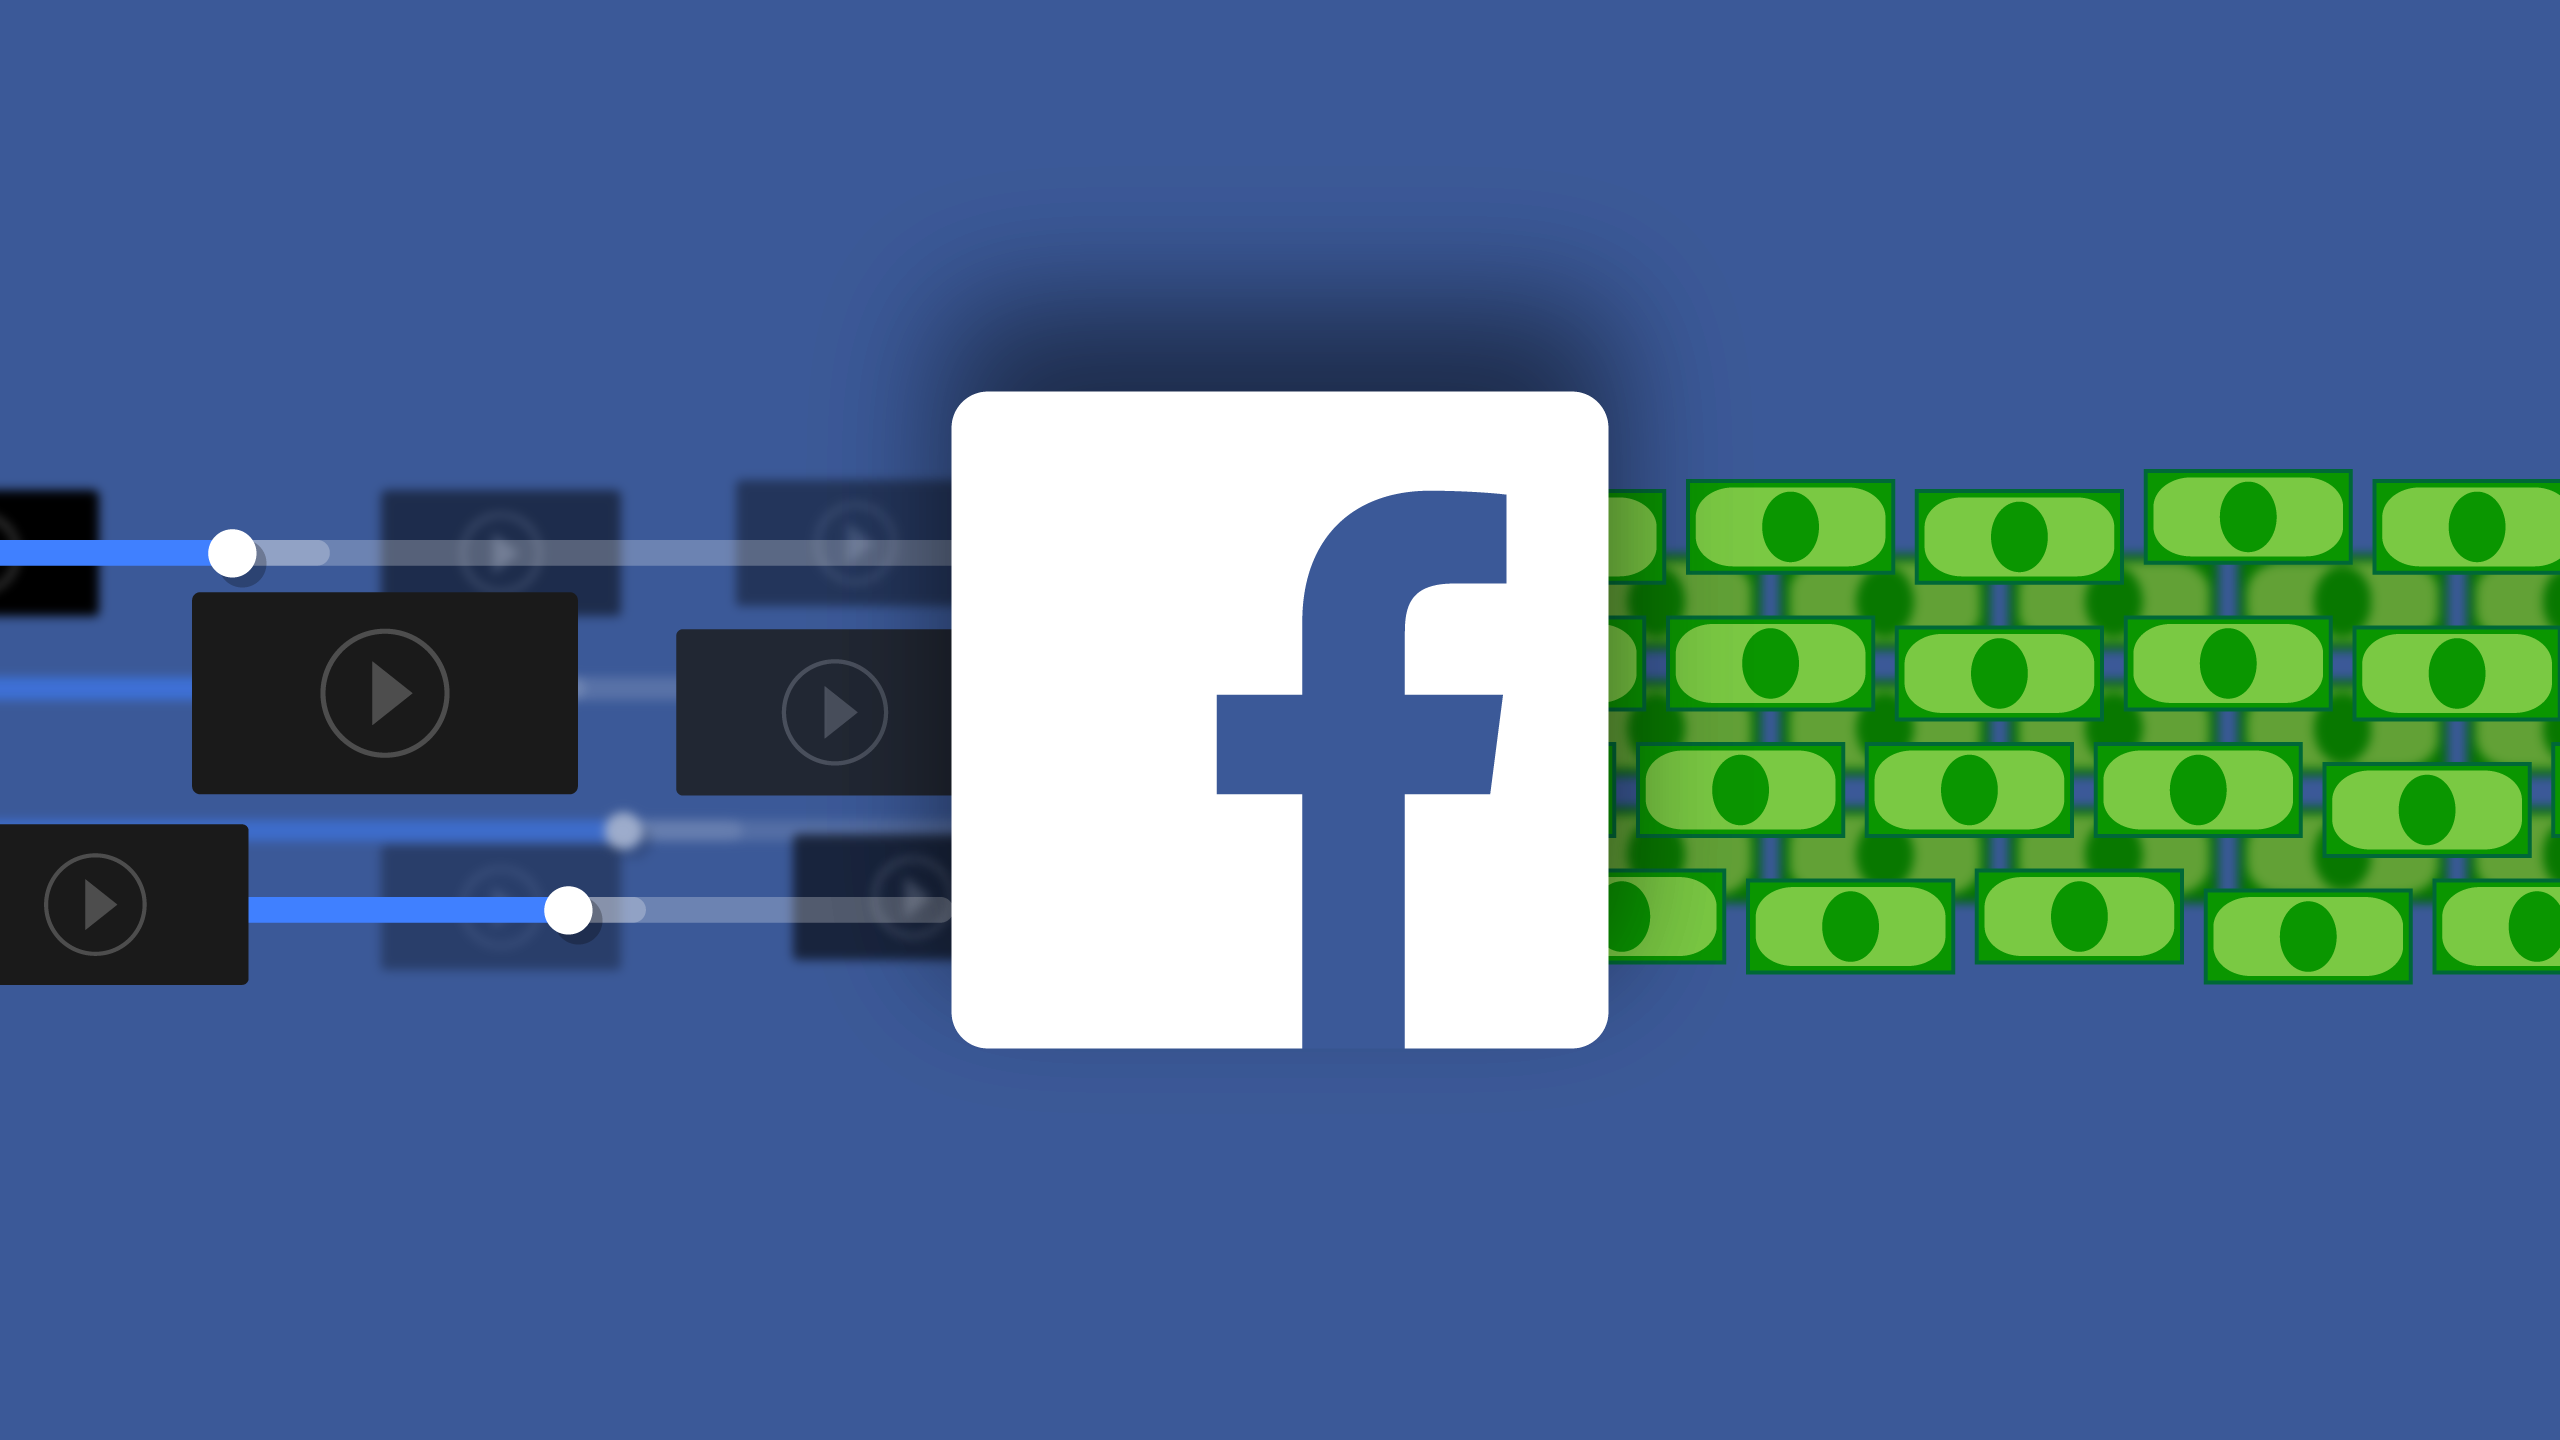 Facebooks paid Live deals limit sponsorship opportunities